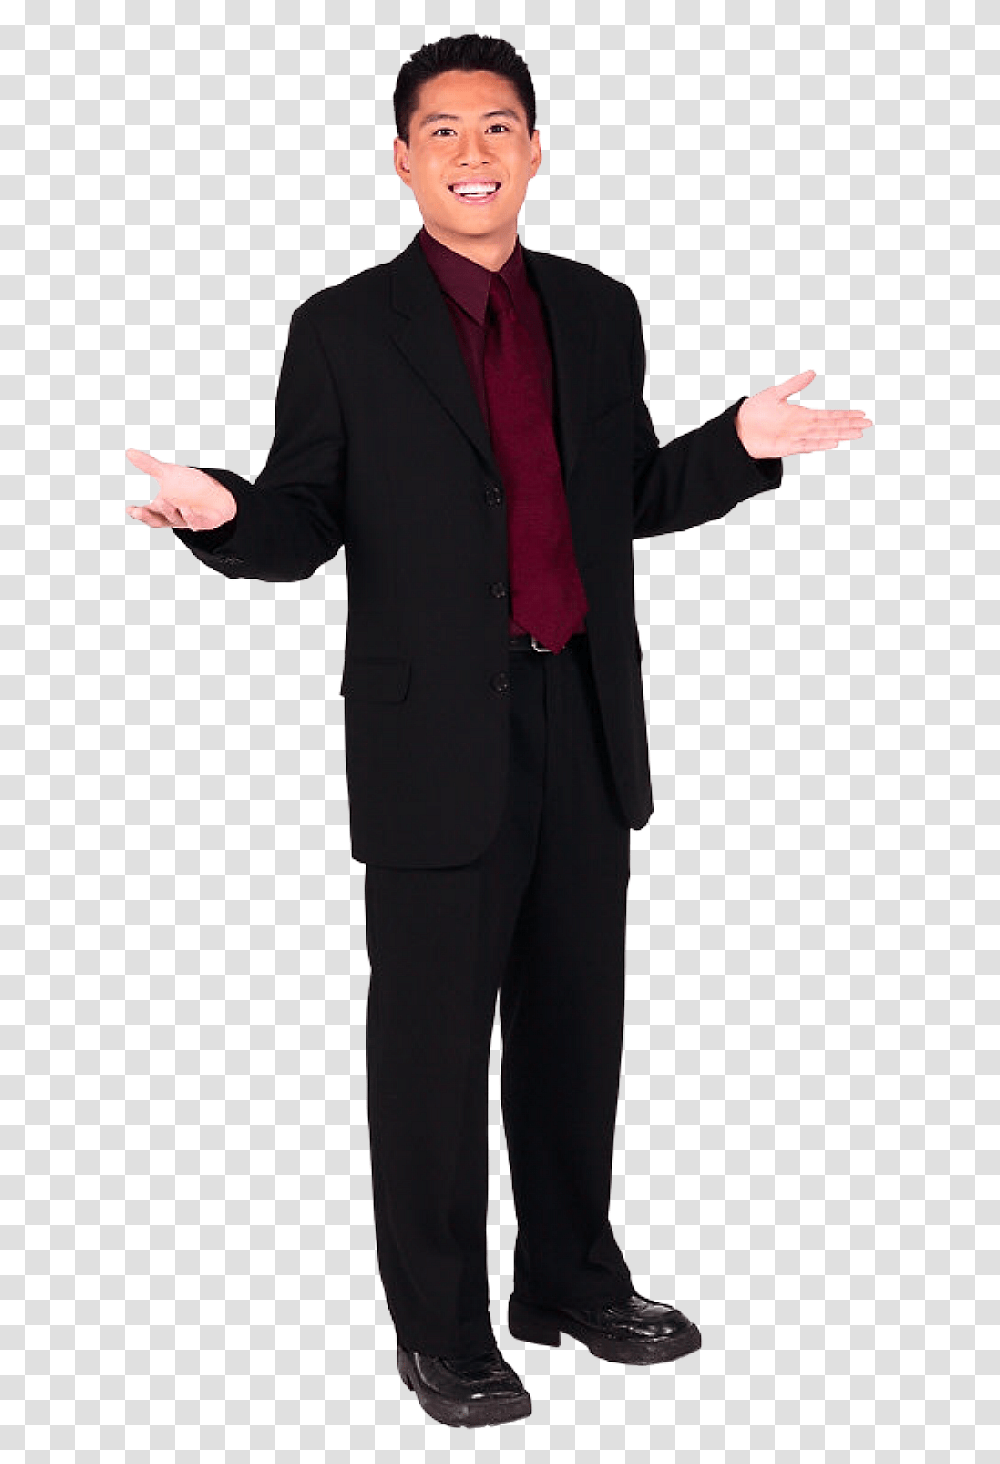 Businessman Image Business Man, Suit, Overcoat, Tuxedo Transparent Png